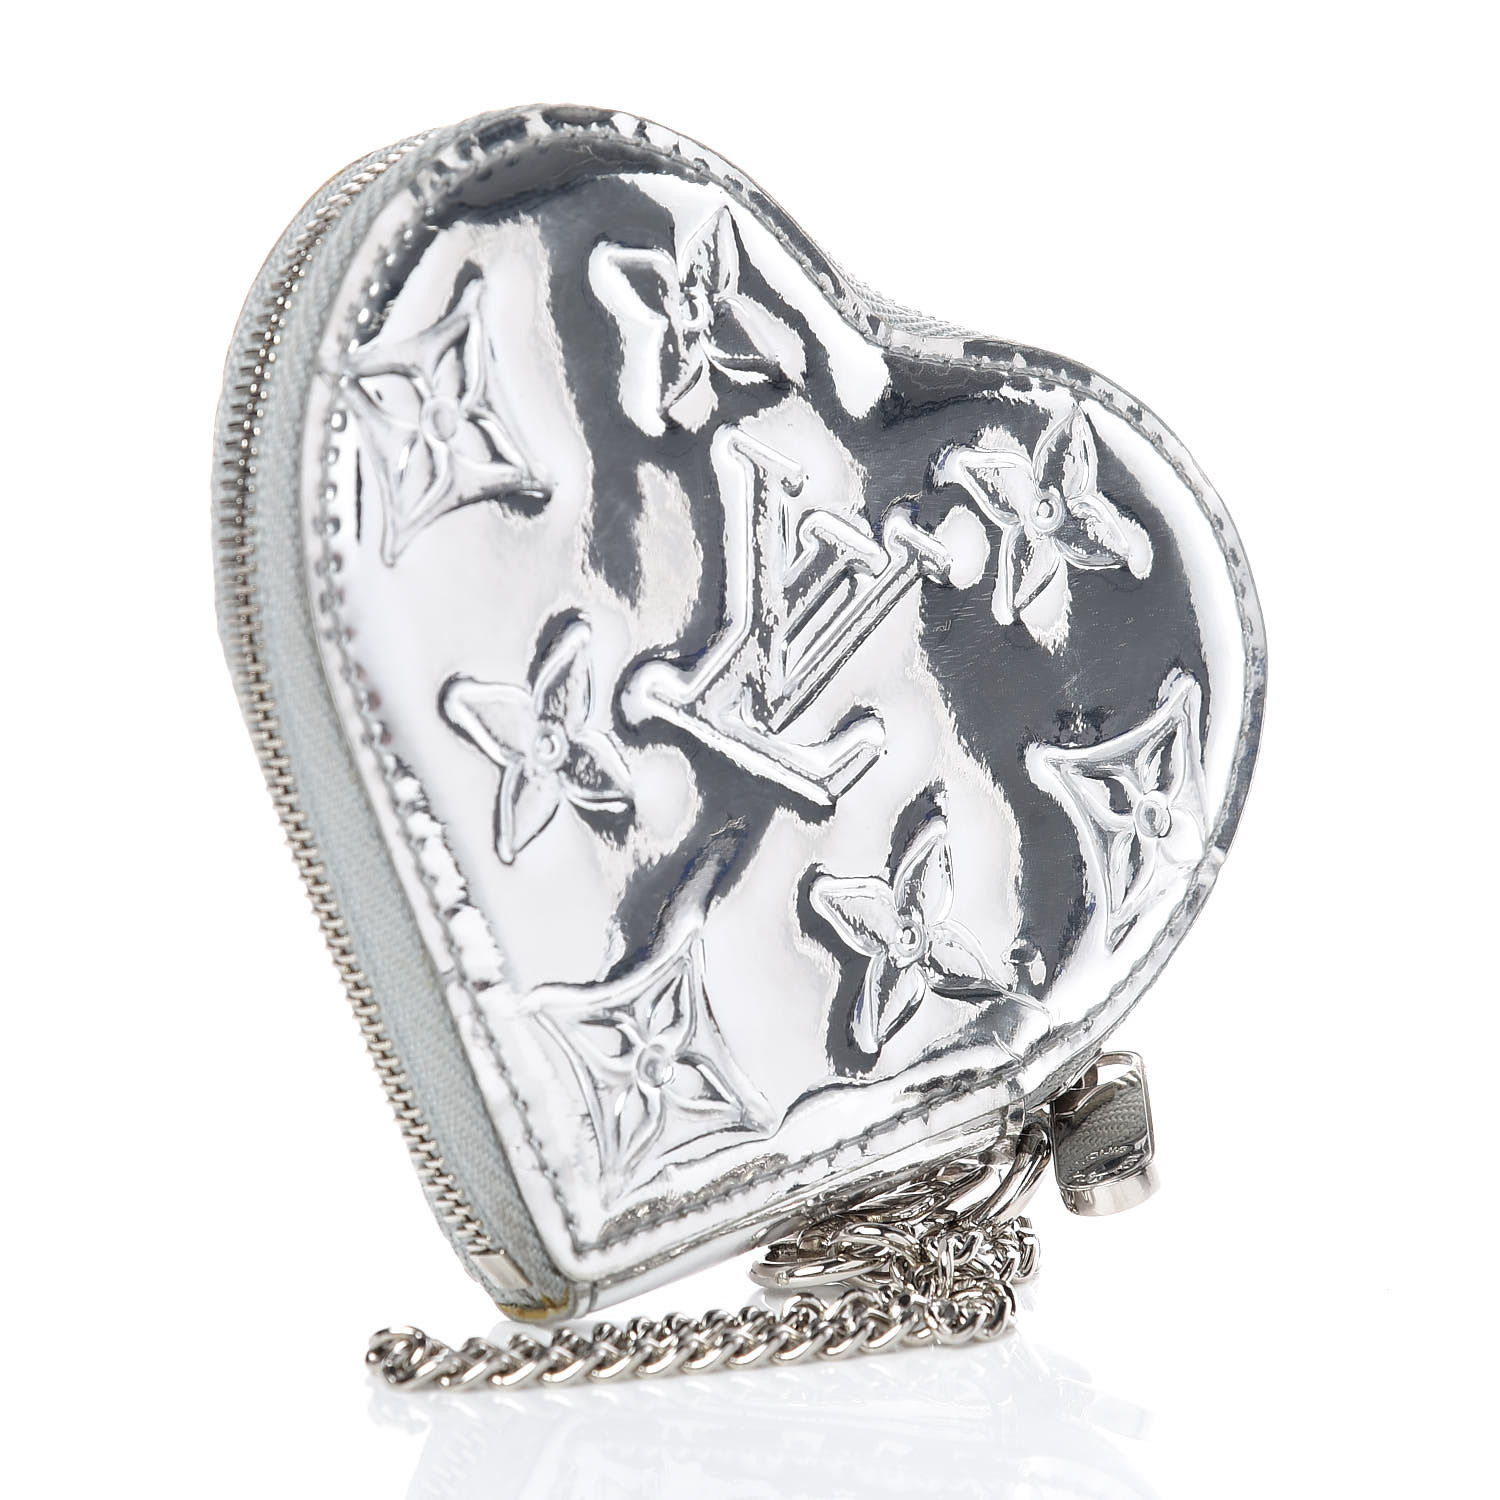 LOUIS VUITTON Monogram Miroir Heart Coin Purse Silver 400509 | FASHIONPHILE